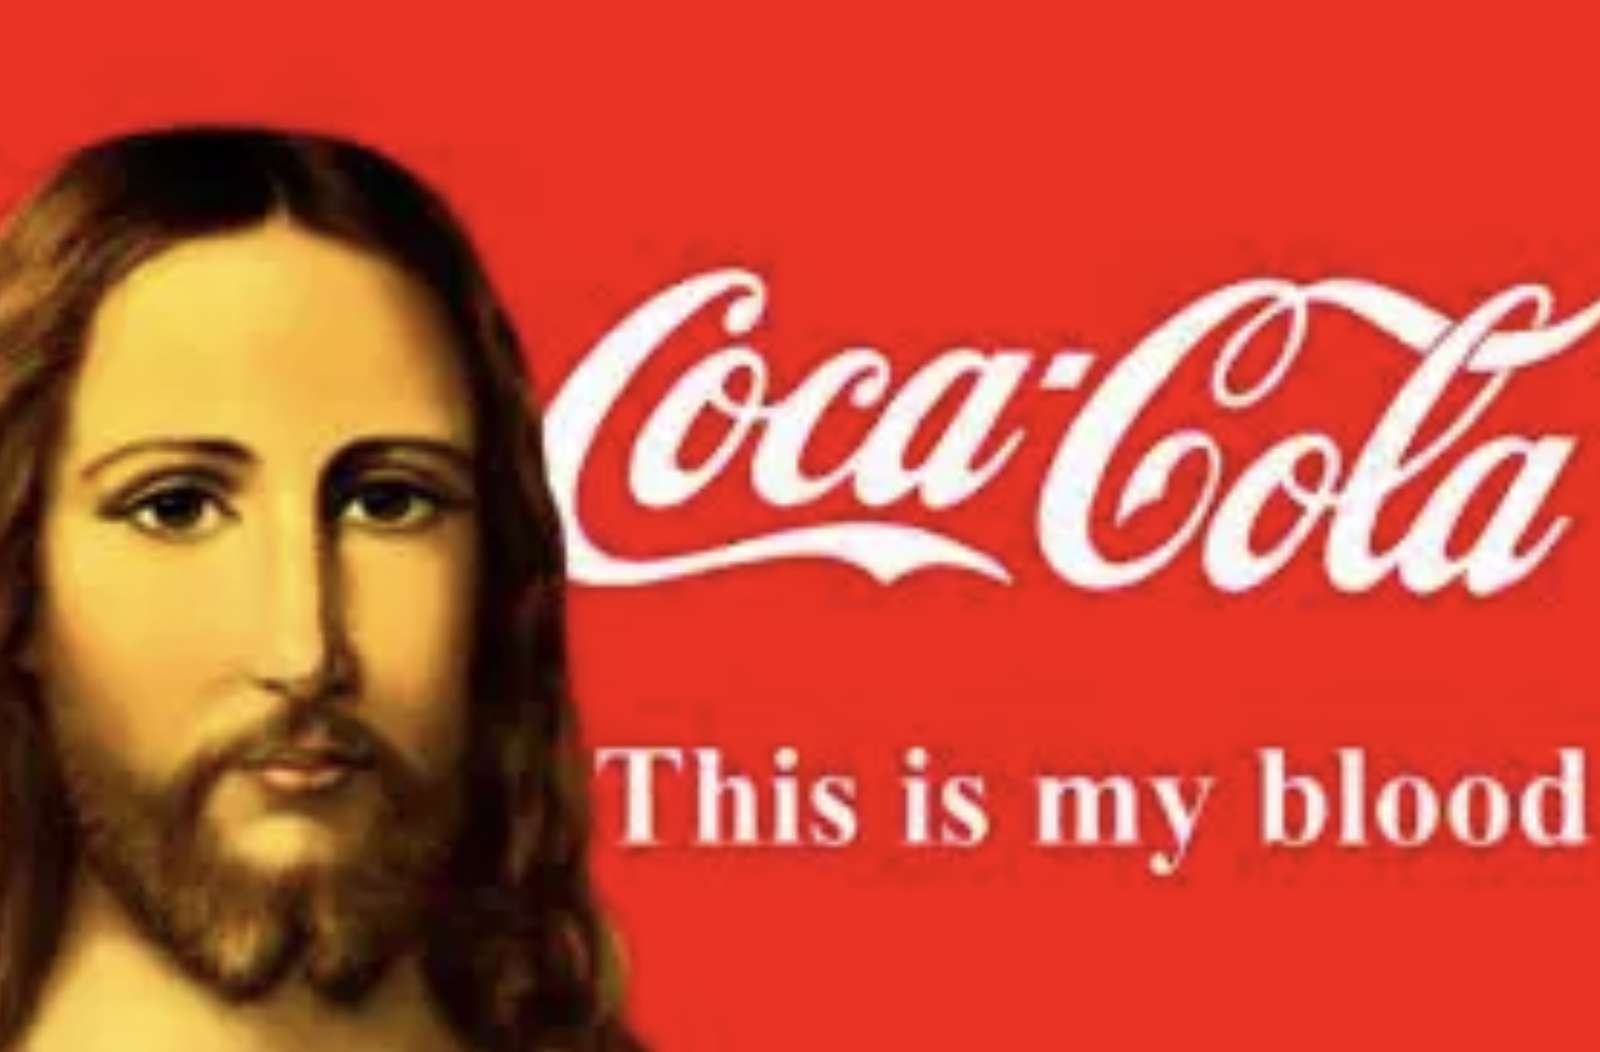 Jesús Coca Cola rompecabezas en línea